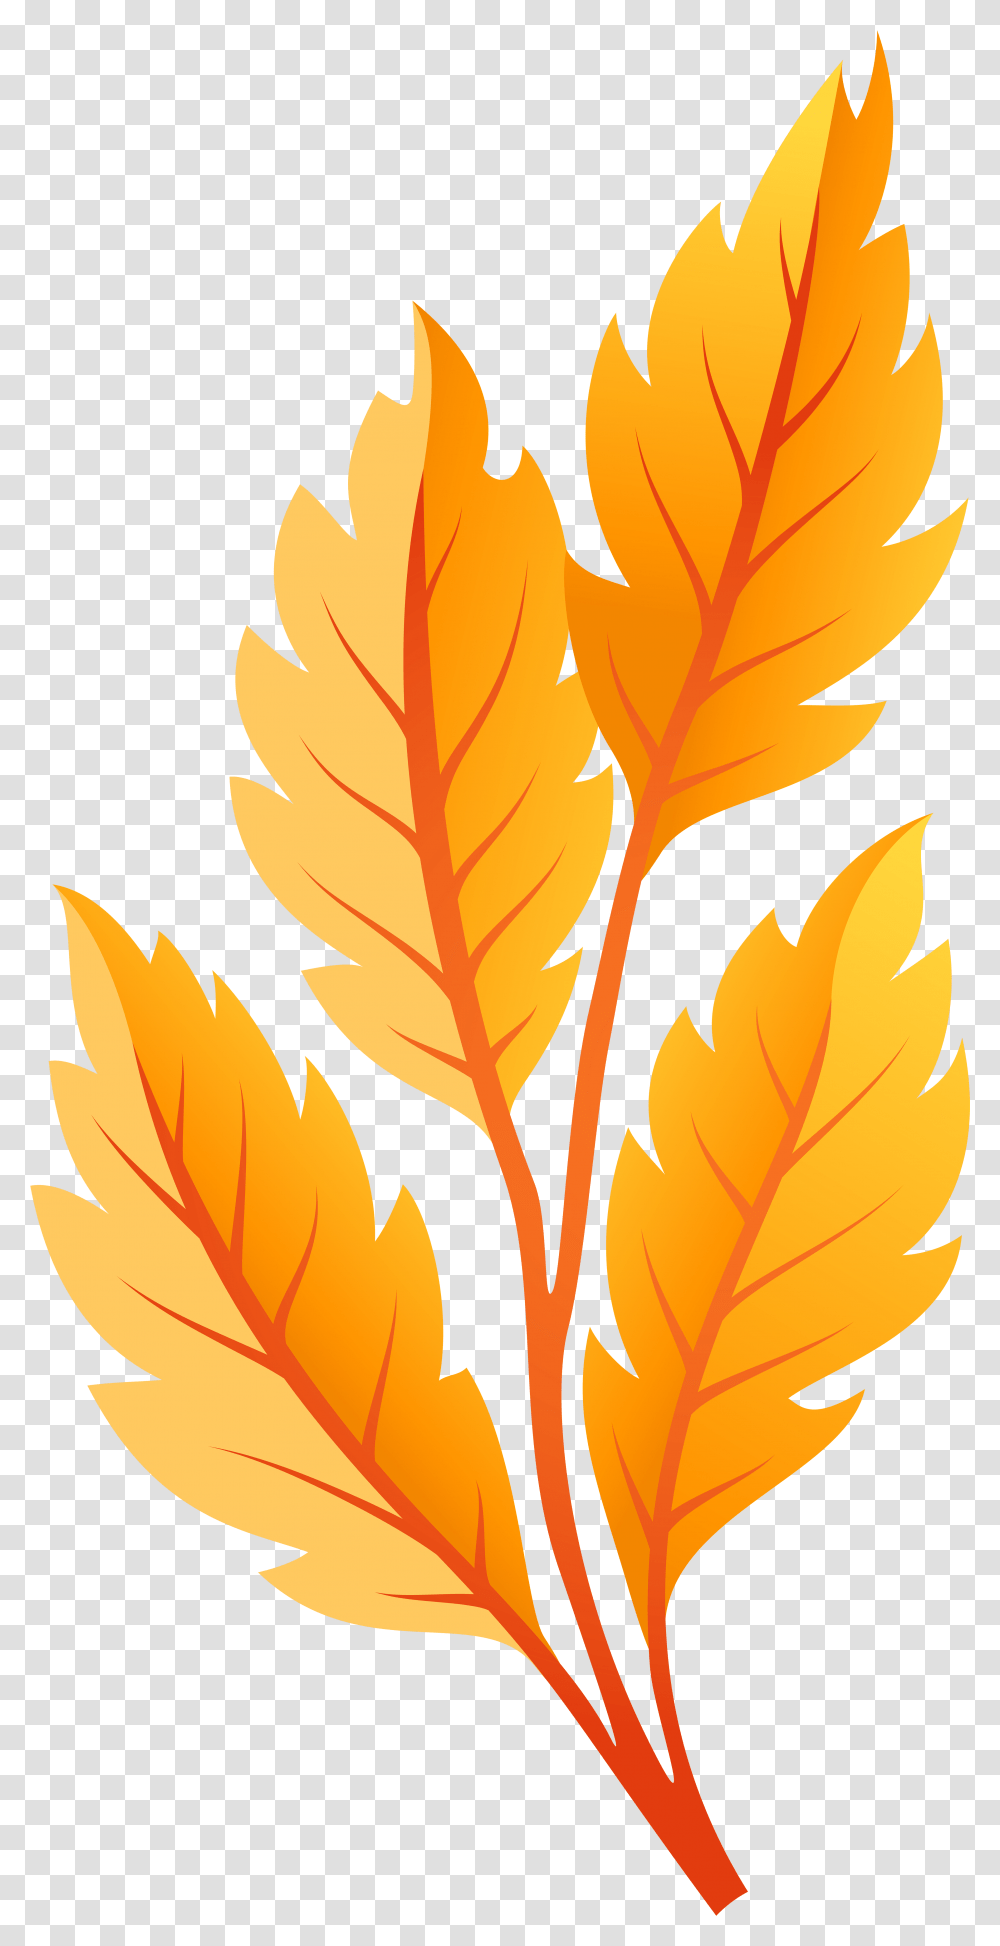 Orange Autumn Leaves Clip Art Clip Art Yellow Leaf, Plant, Maple Leaf, Tree, Veins Transparent Png